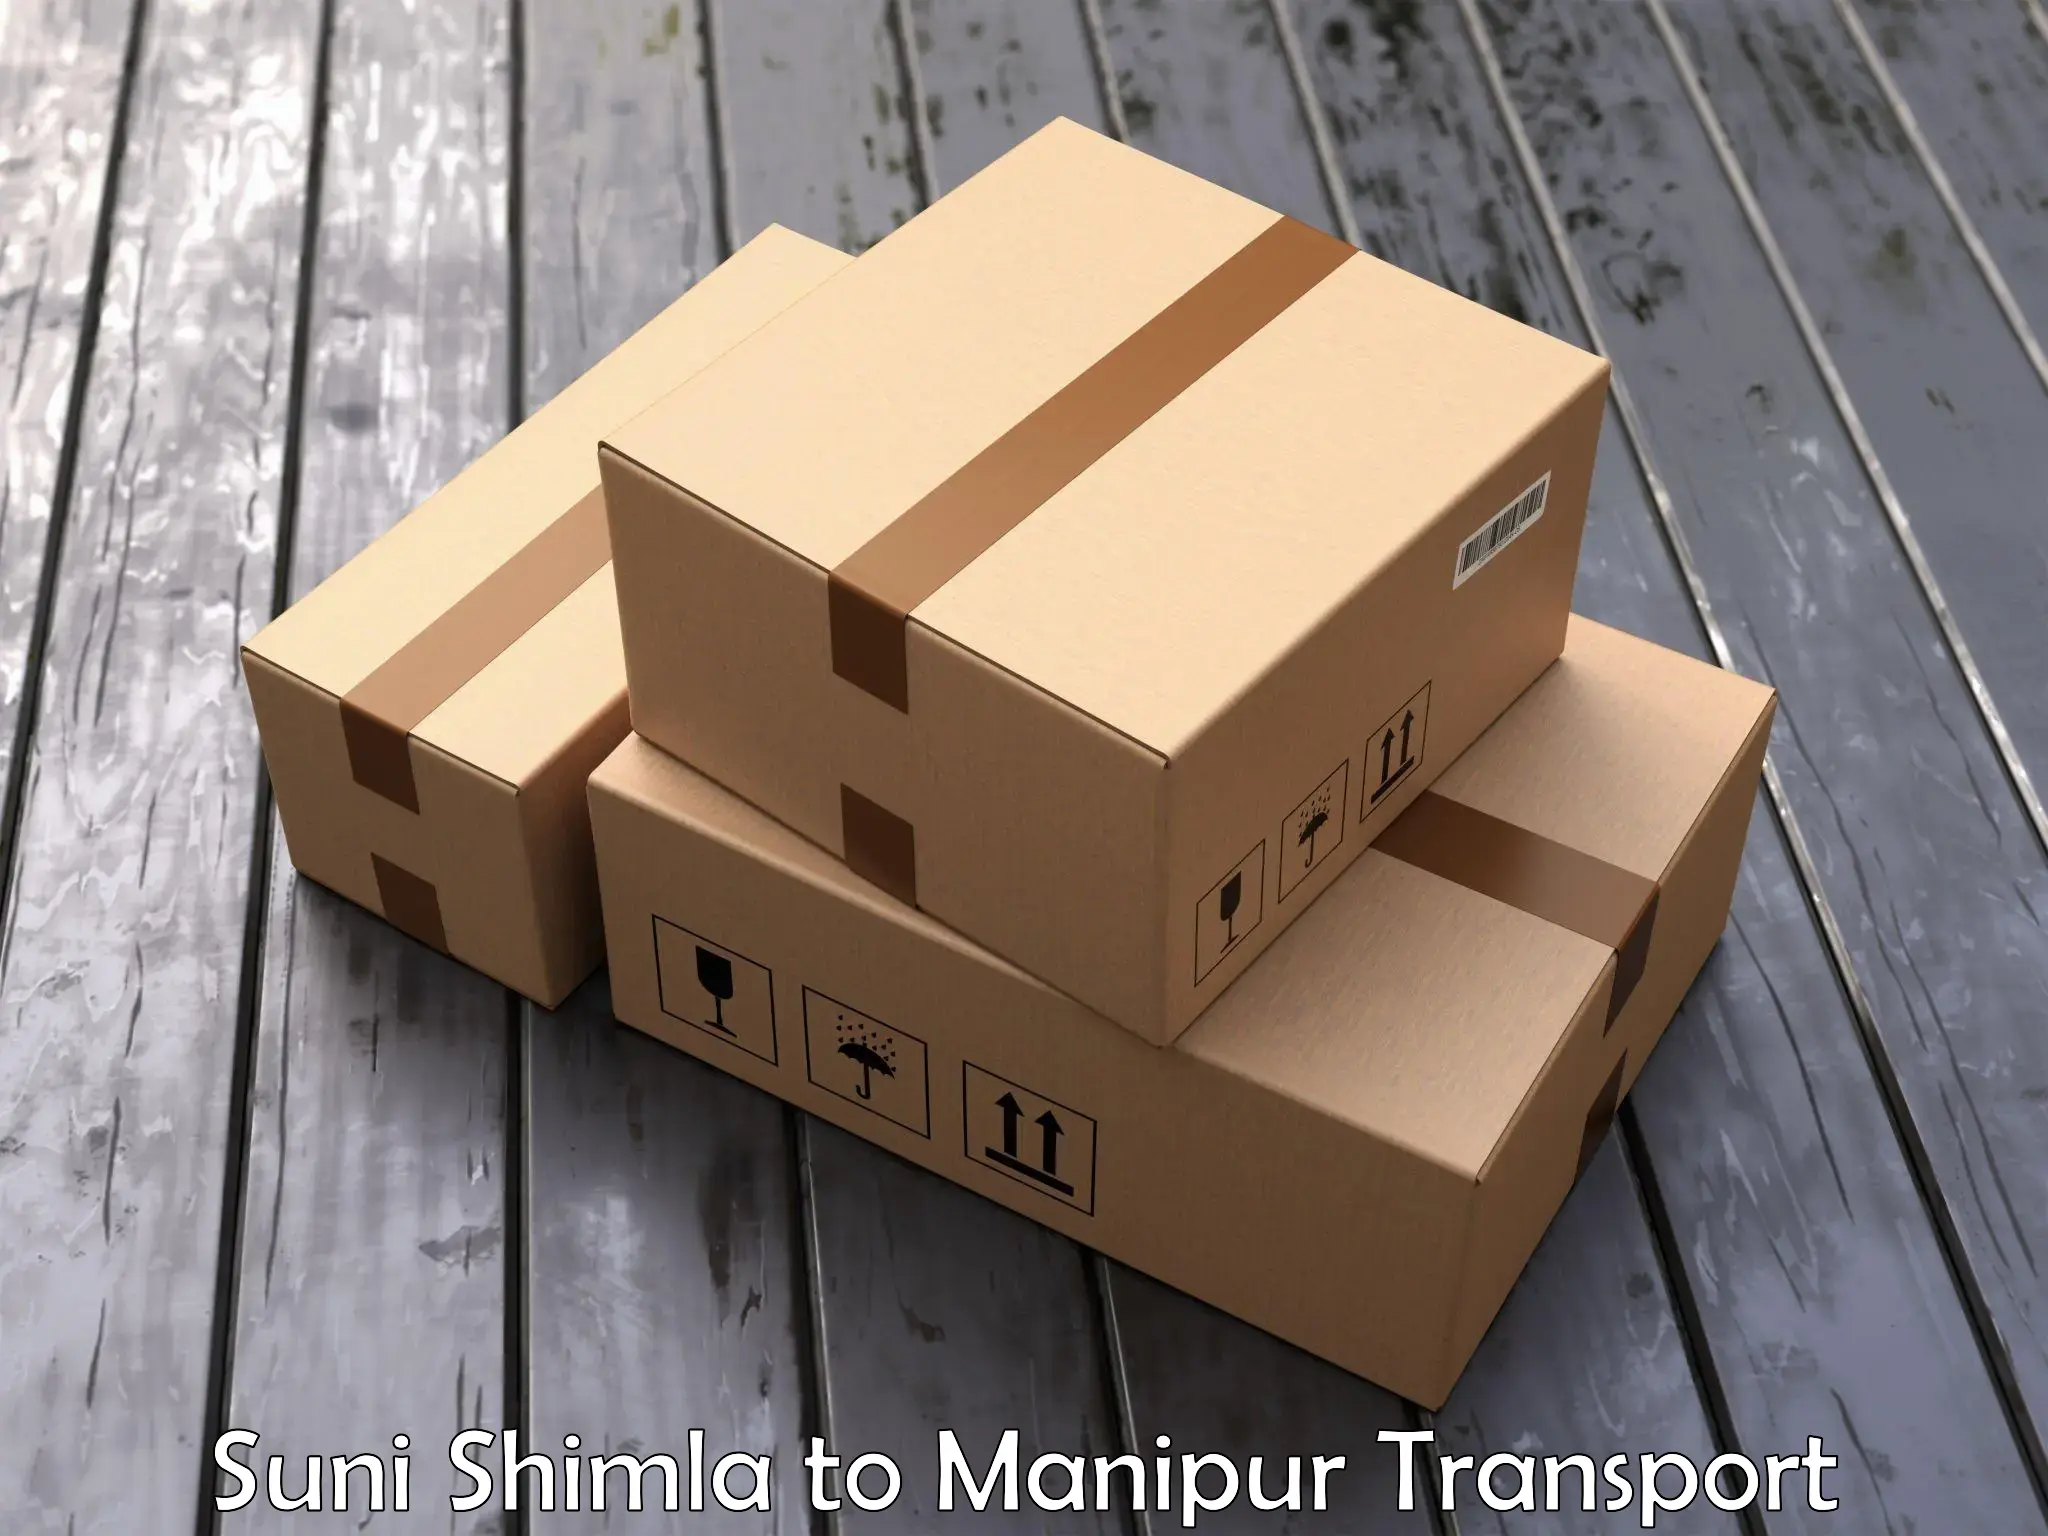 Daily transport service Suni Shimla to Kaptipada